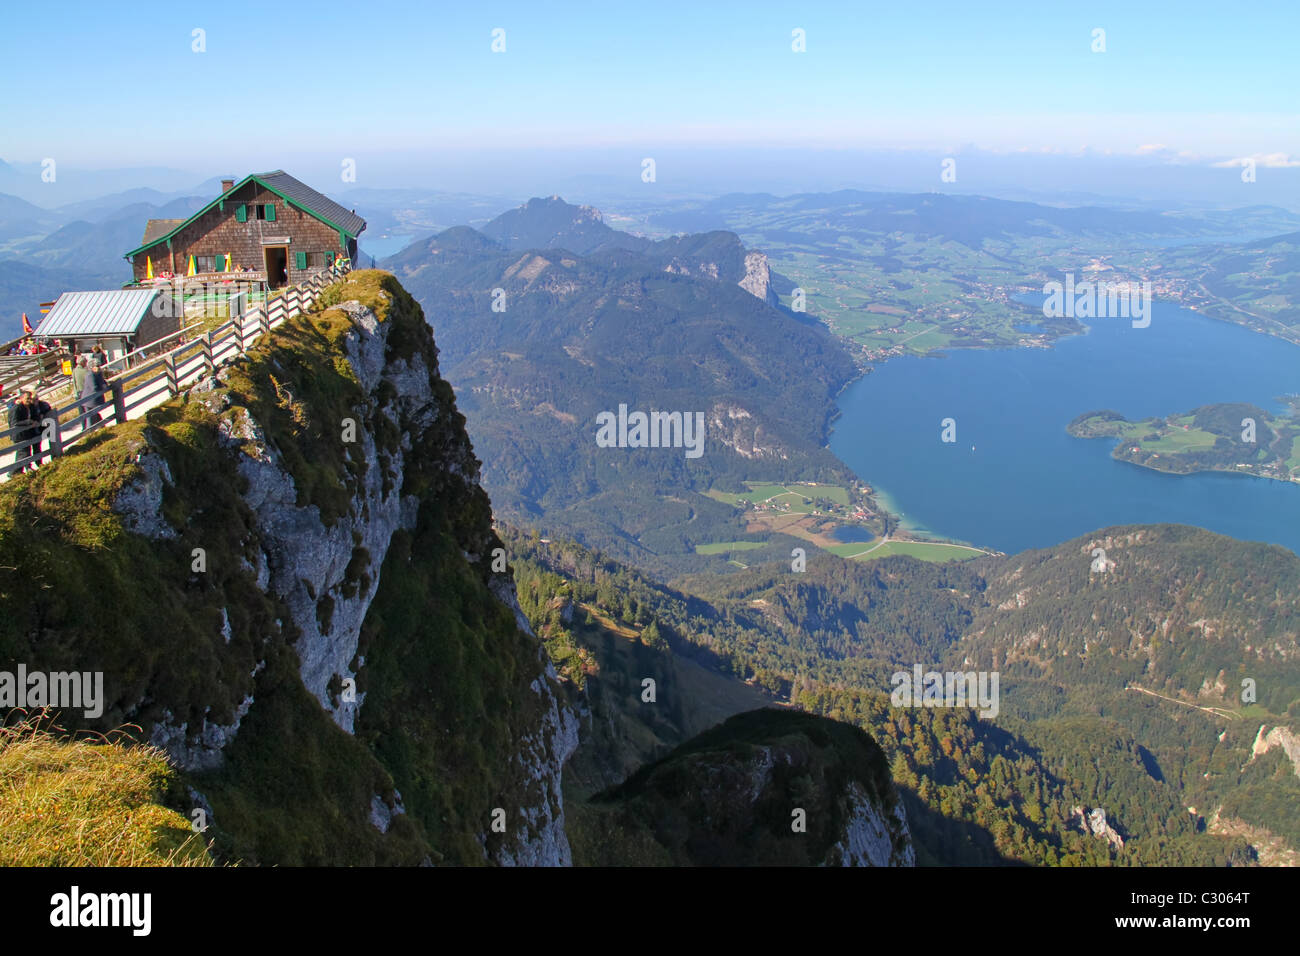 Austria, View from Schafberg, Mondsee Stock Photo